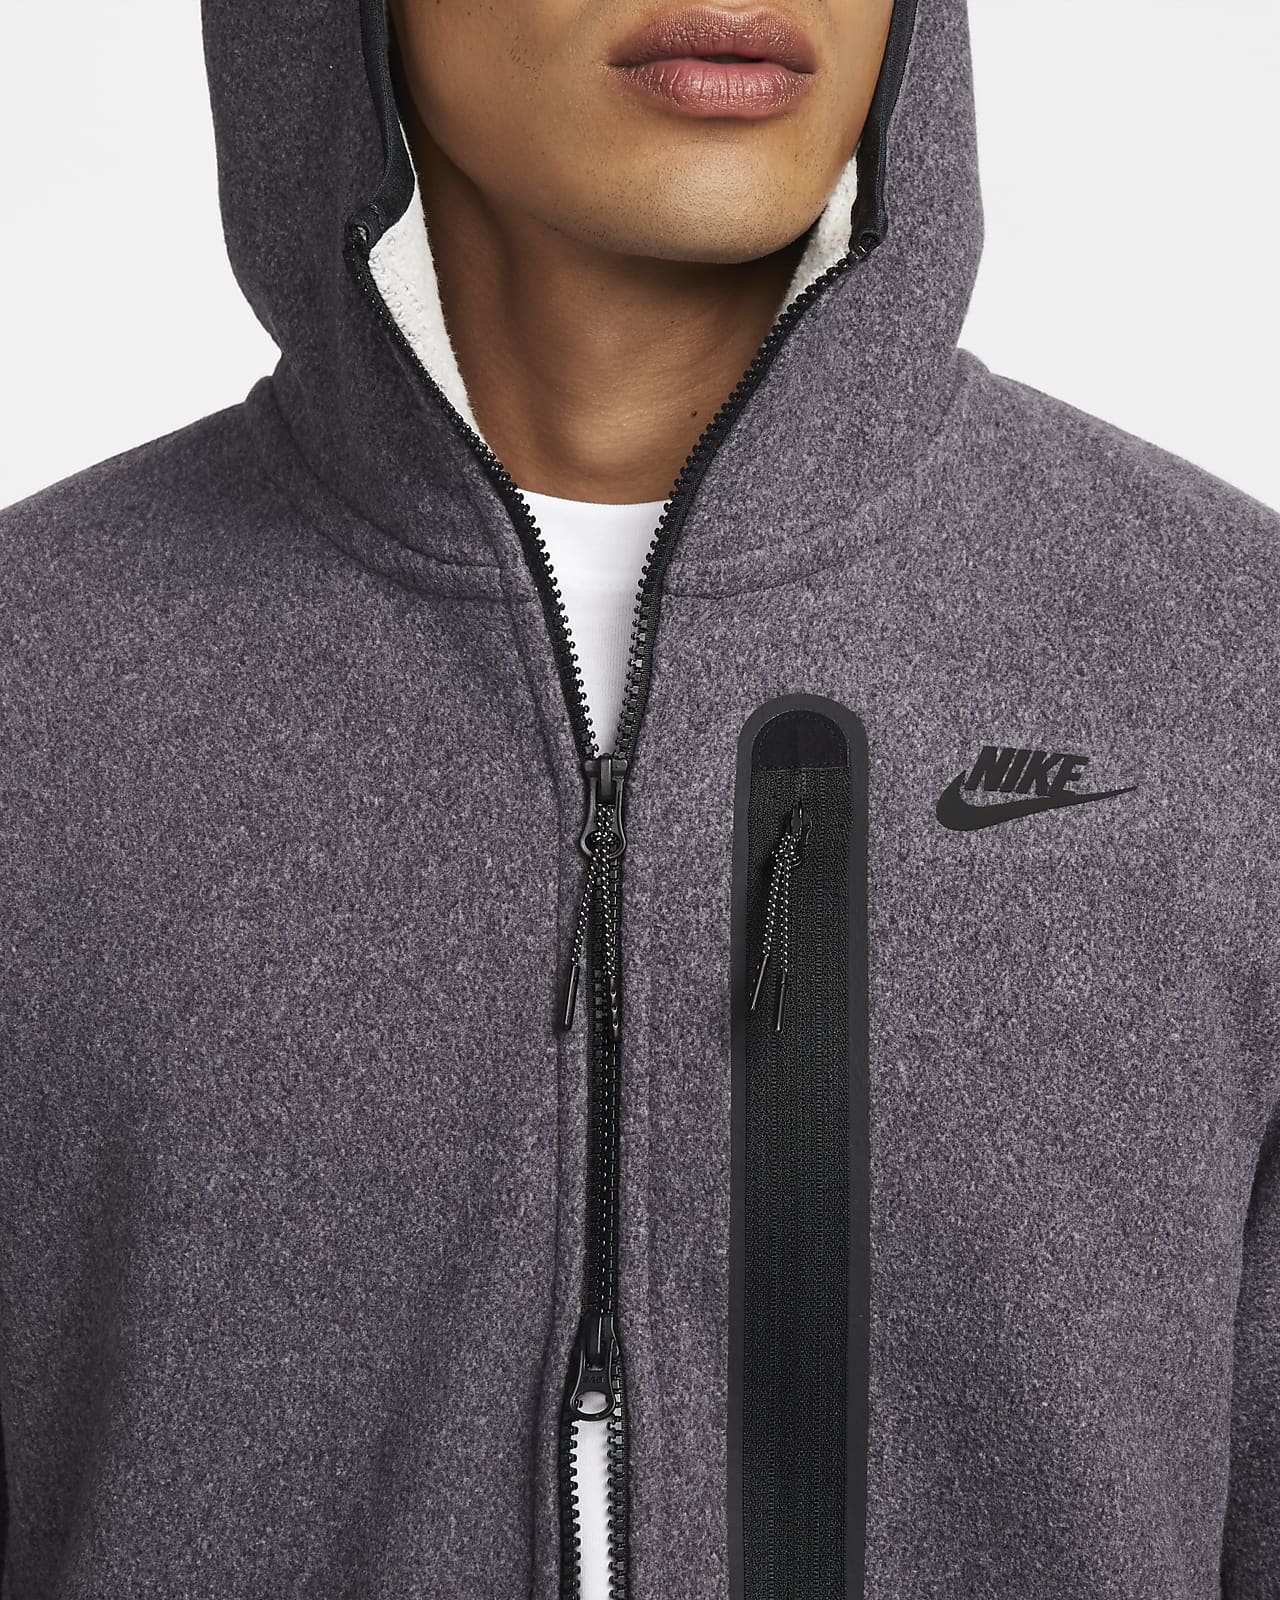 Slink geweten pensioen Nike Sportswear Tech Fleece Men's Full-Zip Winterized Hoodie. Nike.com